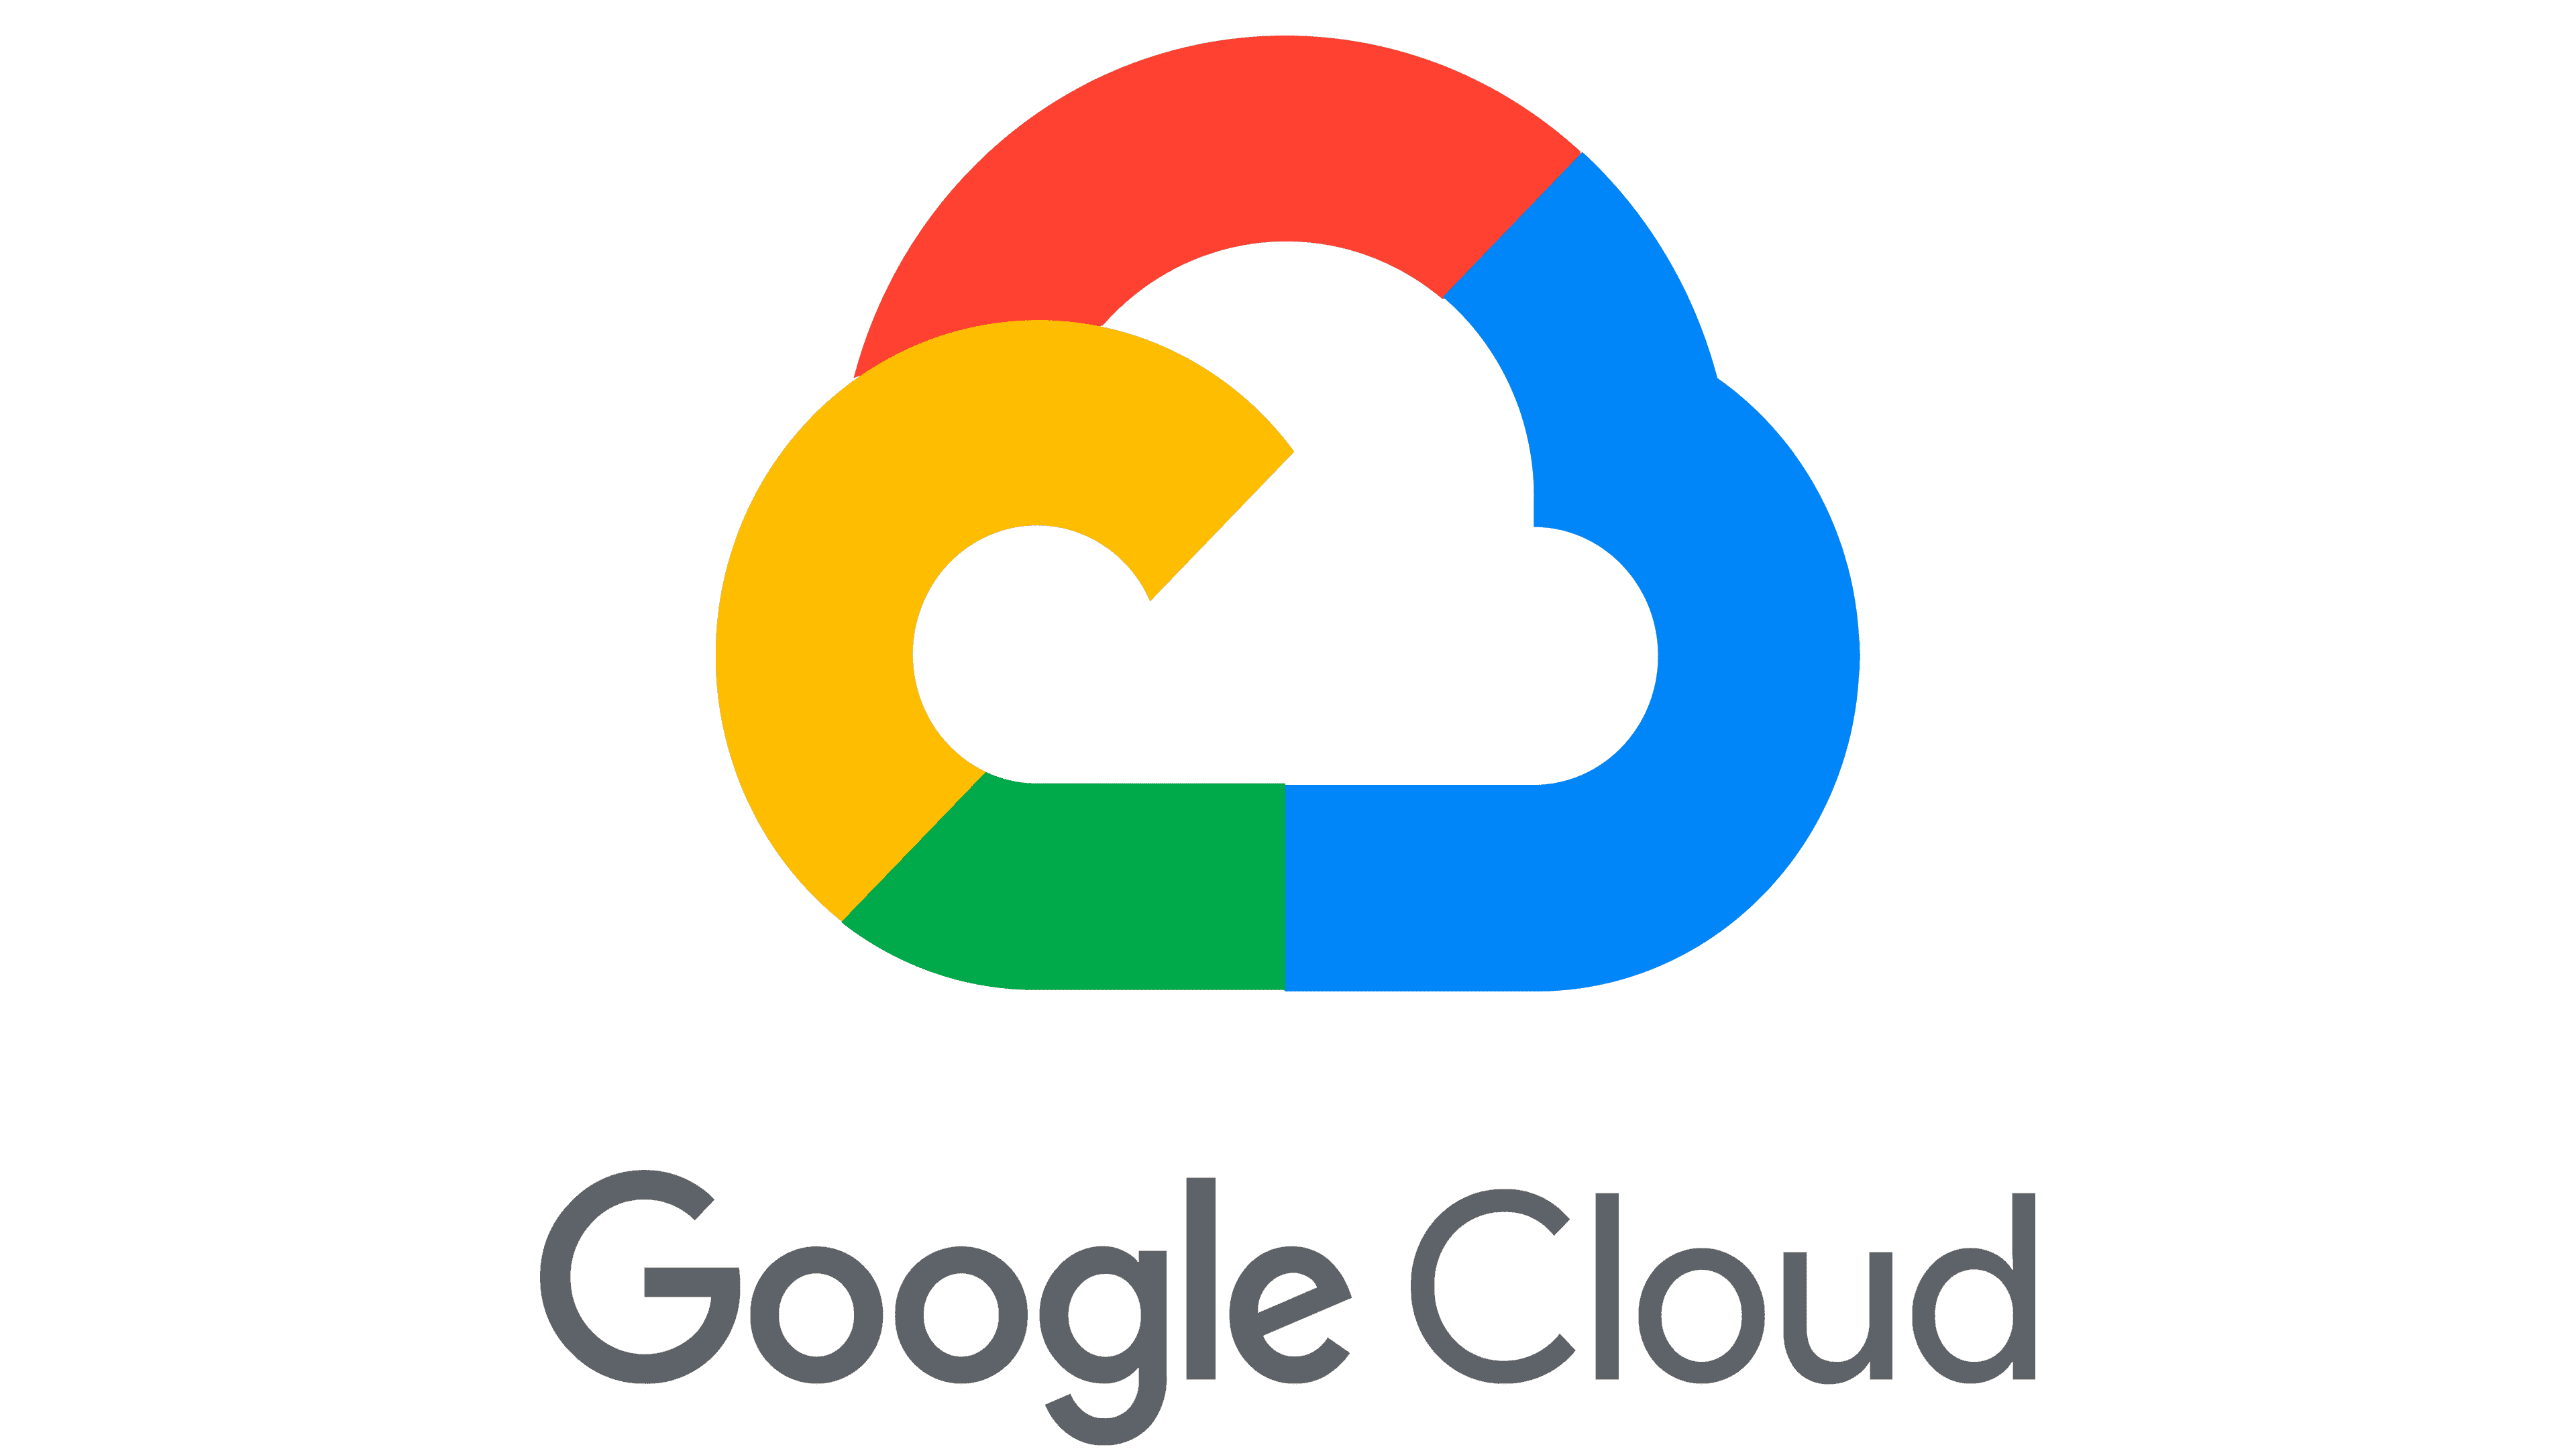 Logo representing Google Cloud